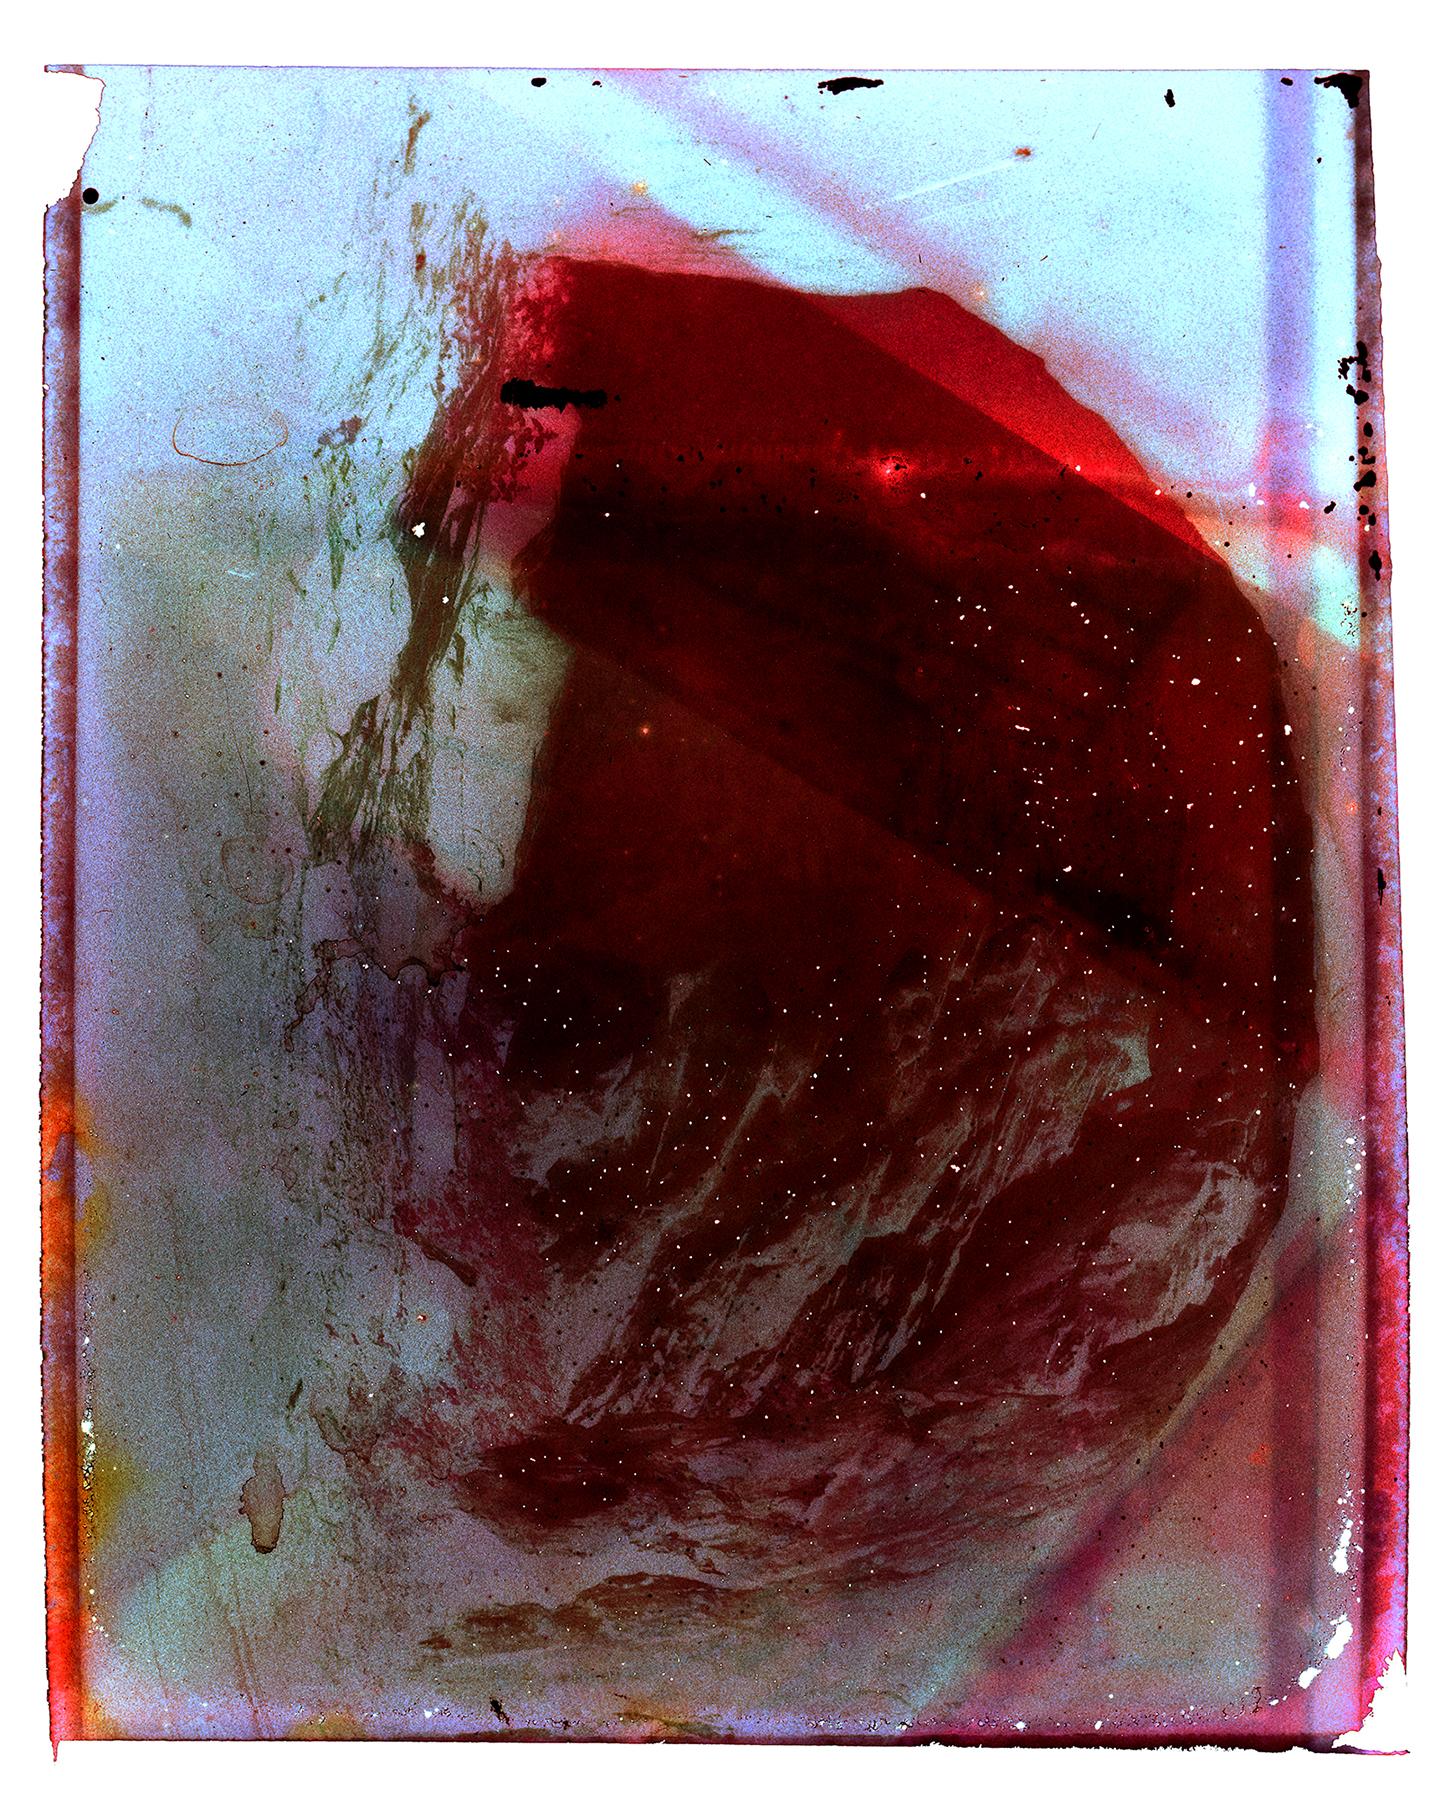 Color Photograph Cristina Fontsare - Dans la grotte de la sorcière - Contemporain, Polaroid, Photographie, Enfance, abstrait